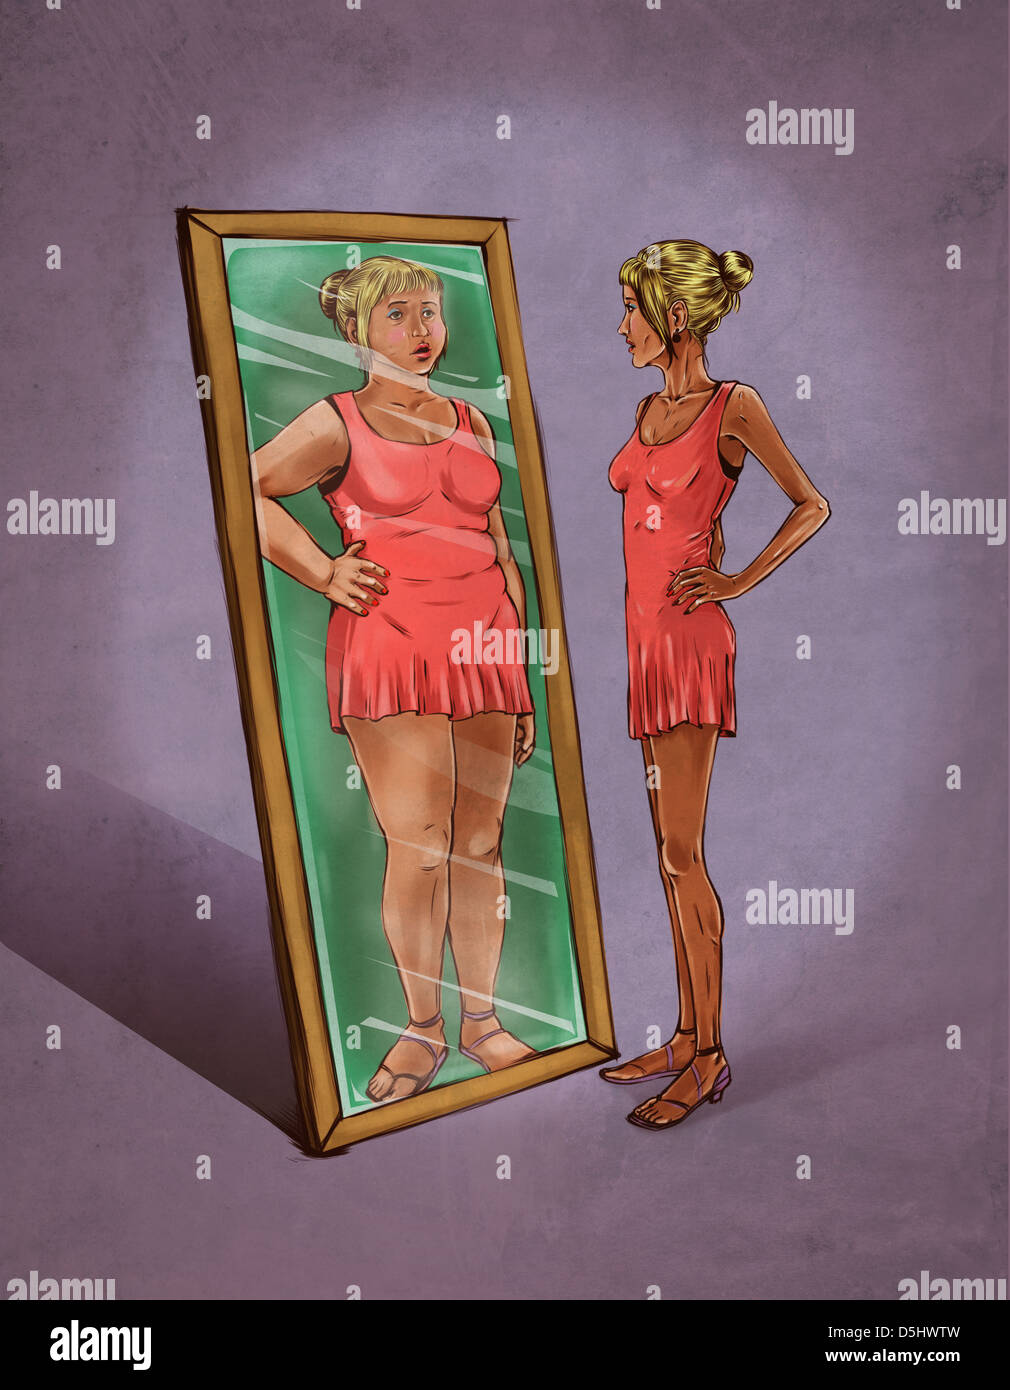 Anschauliches Bild der Frau in Spiegel sieht sich als Vertretung der Essstörung Übergewicht Stockfoto